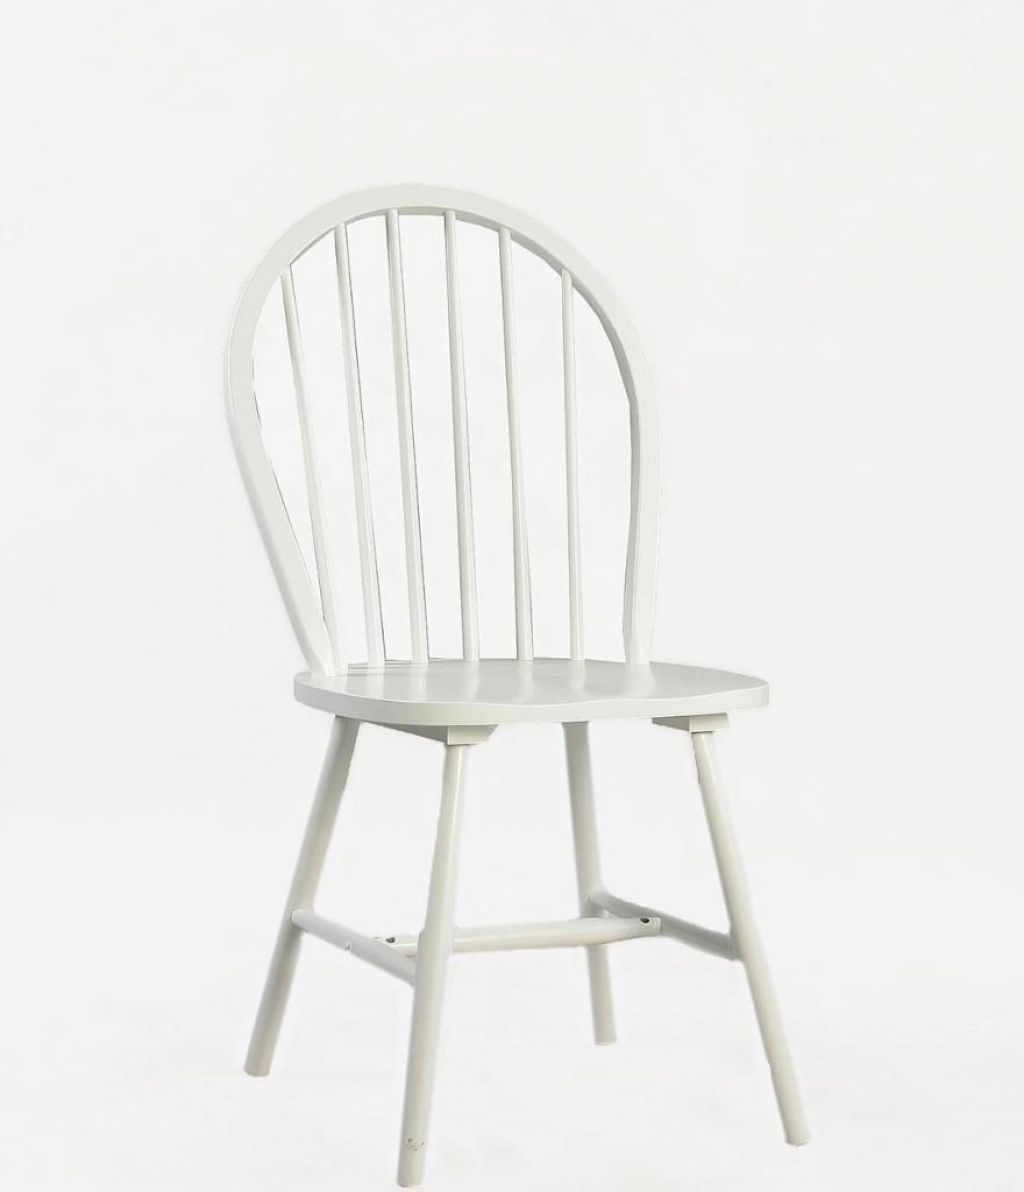 Աթոռ Boston white